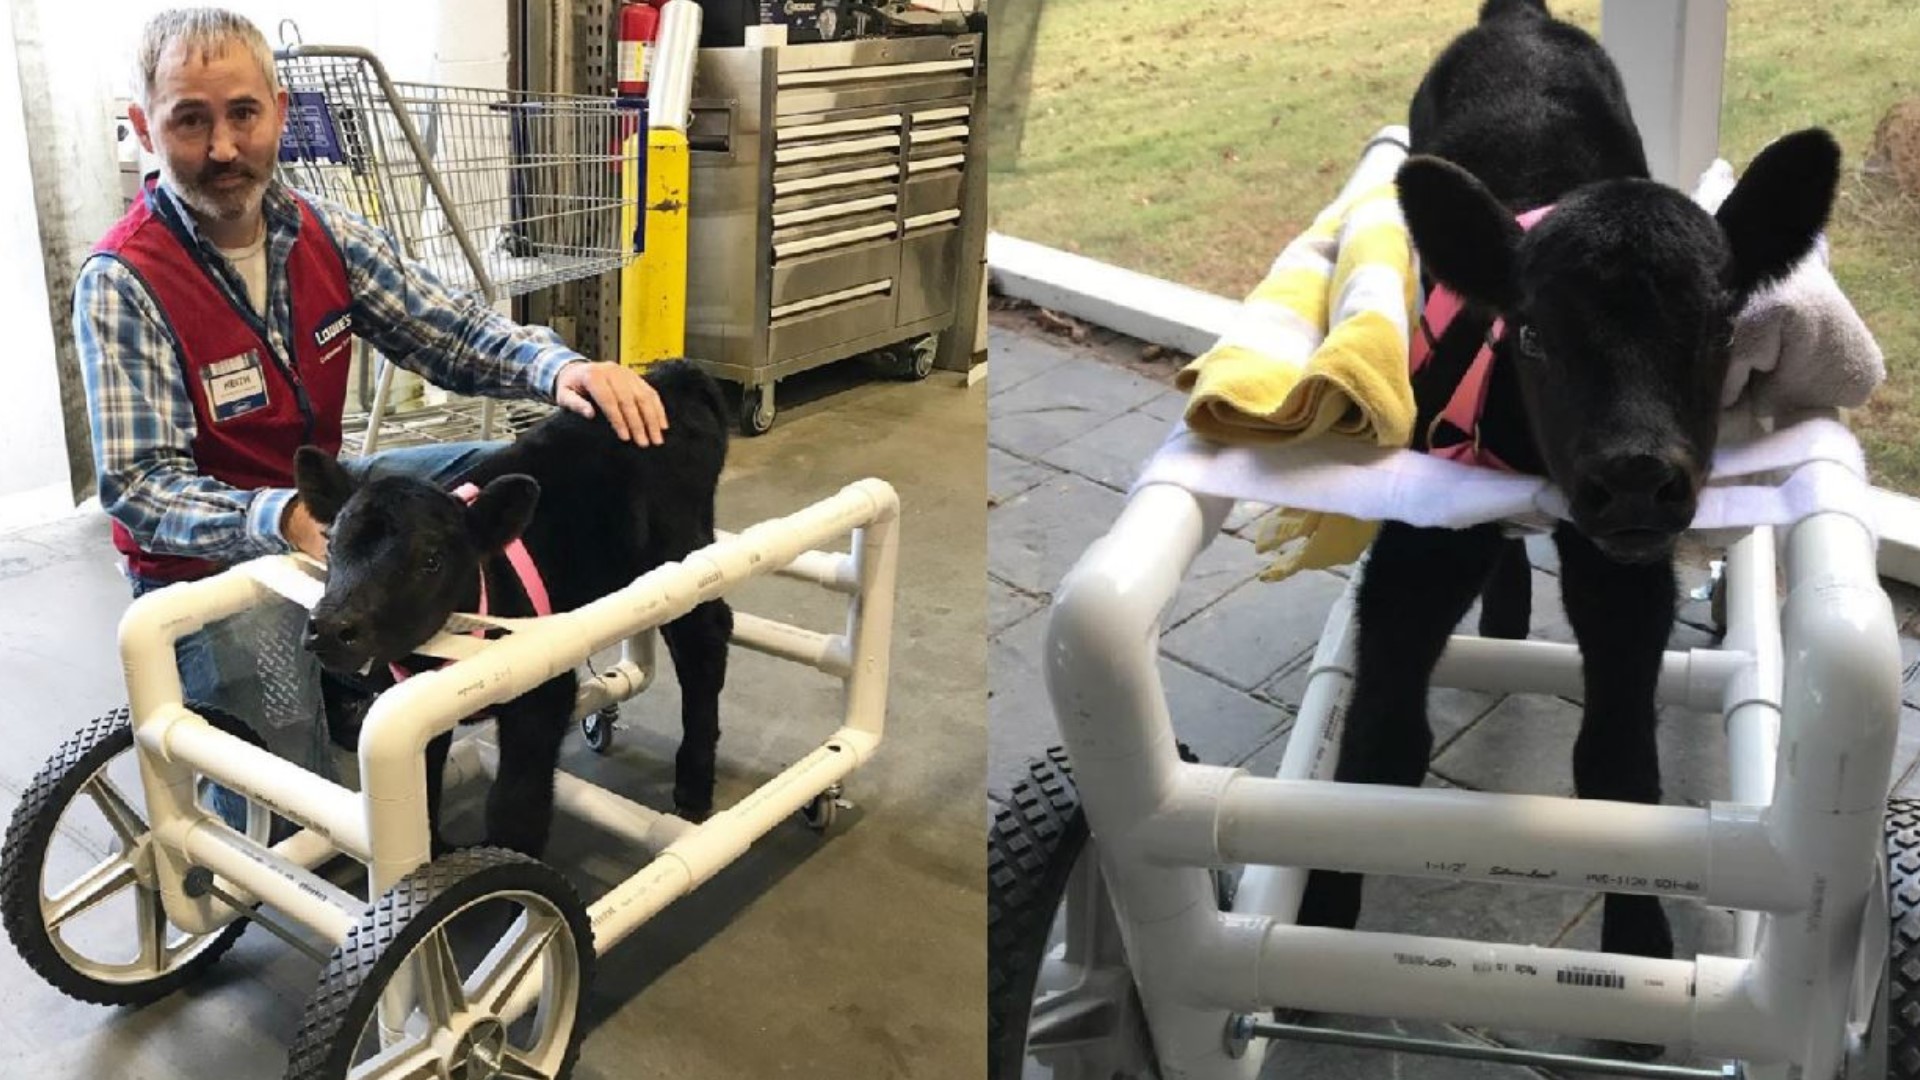 Injured calf gets costume wheelchari